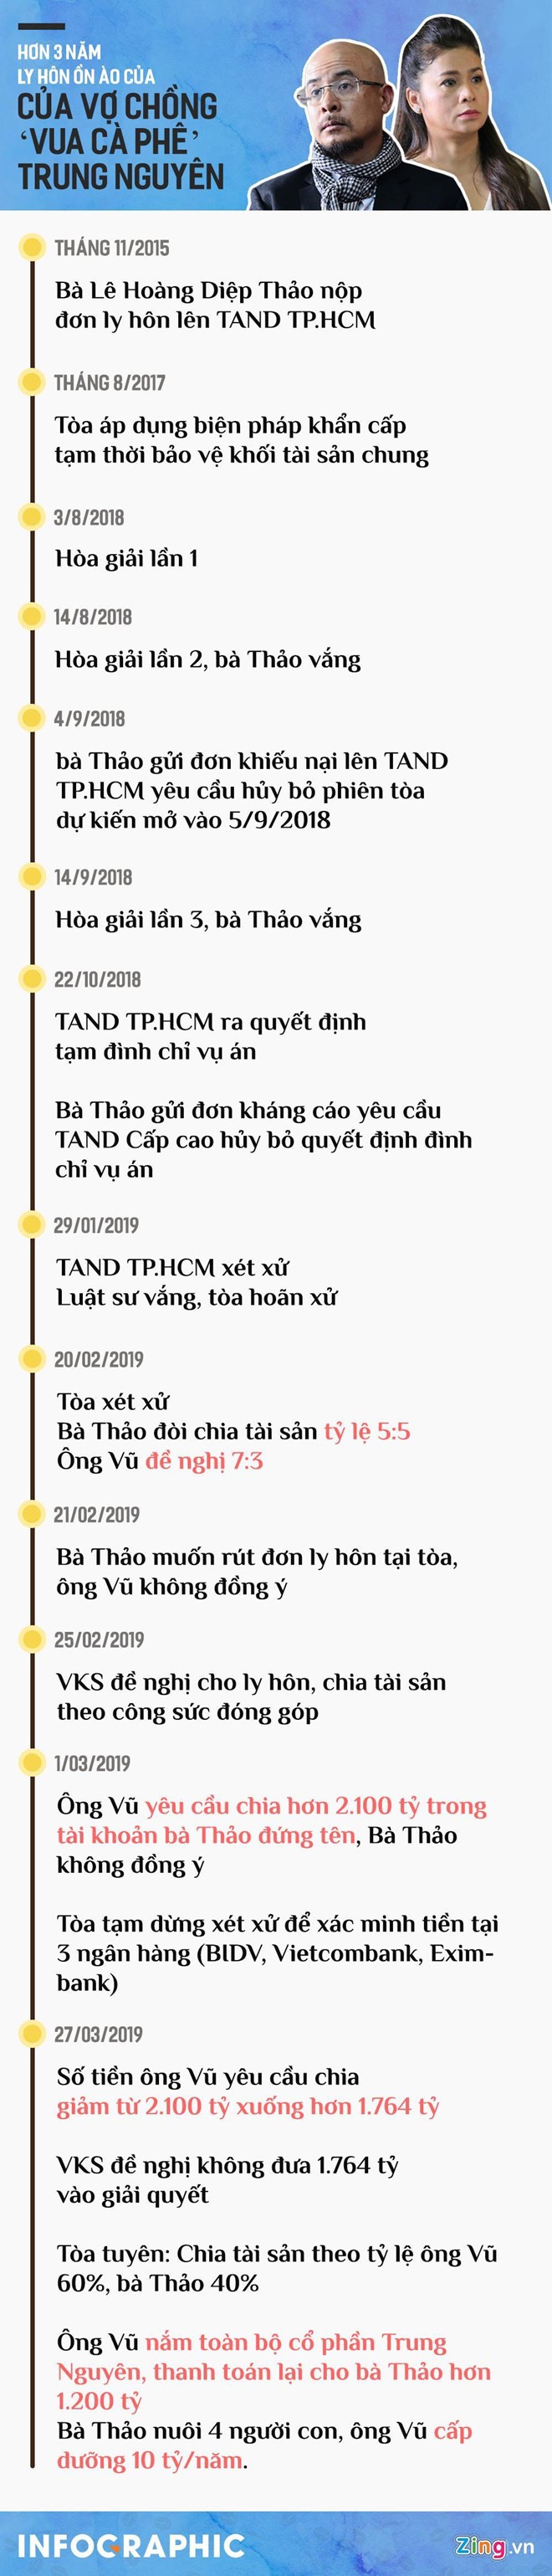 Ba Le Hoang Diep Thao gui don keu cuu toi Chu tich nuoc